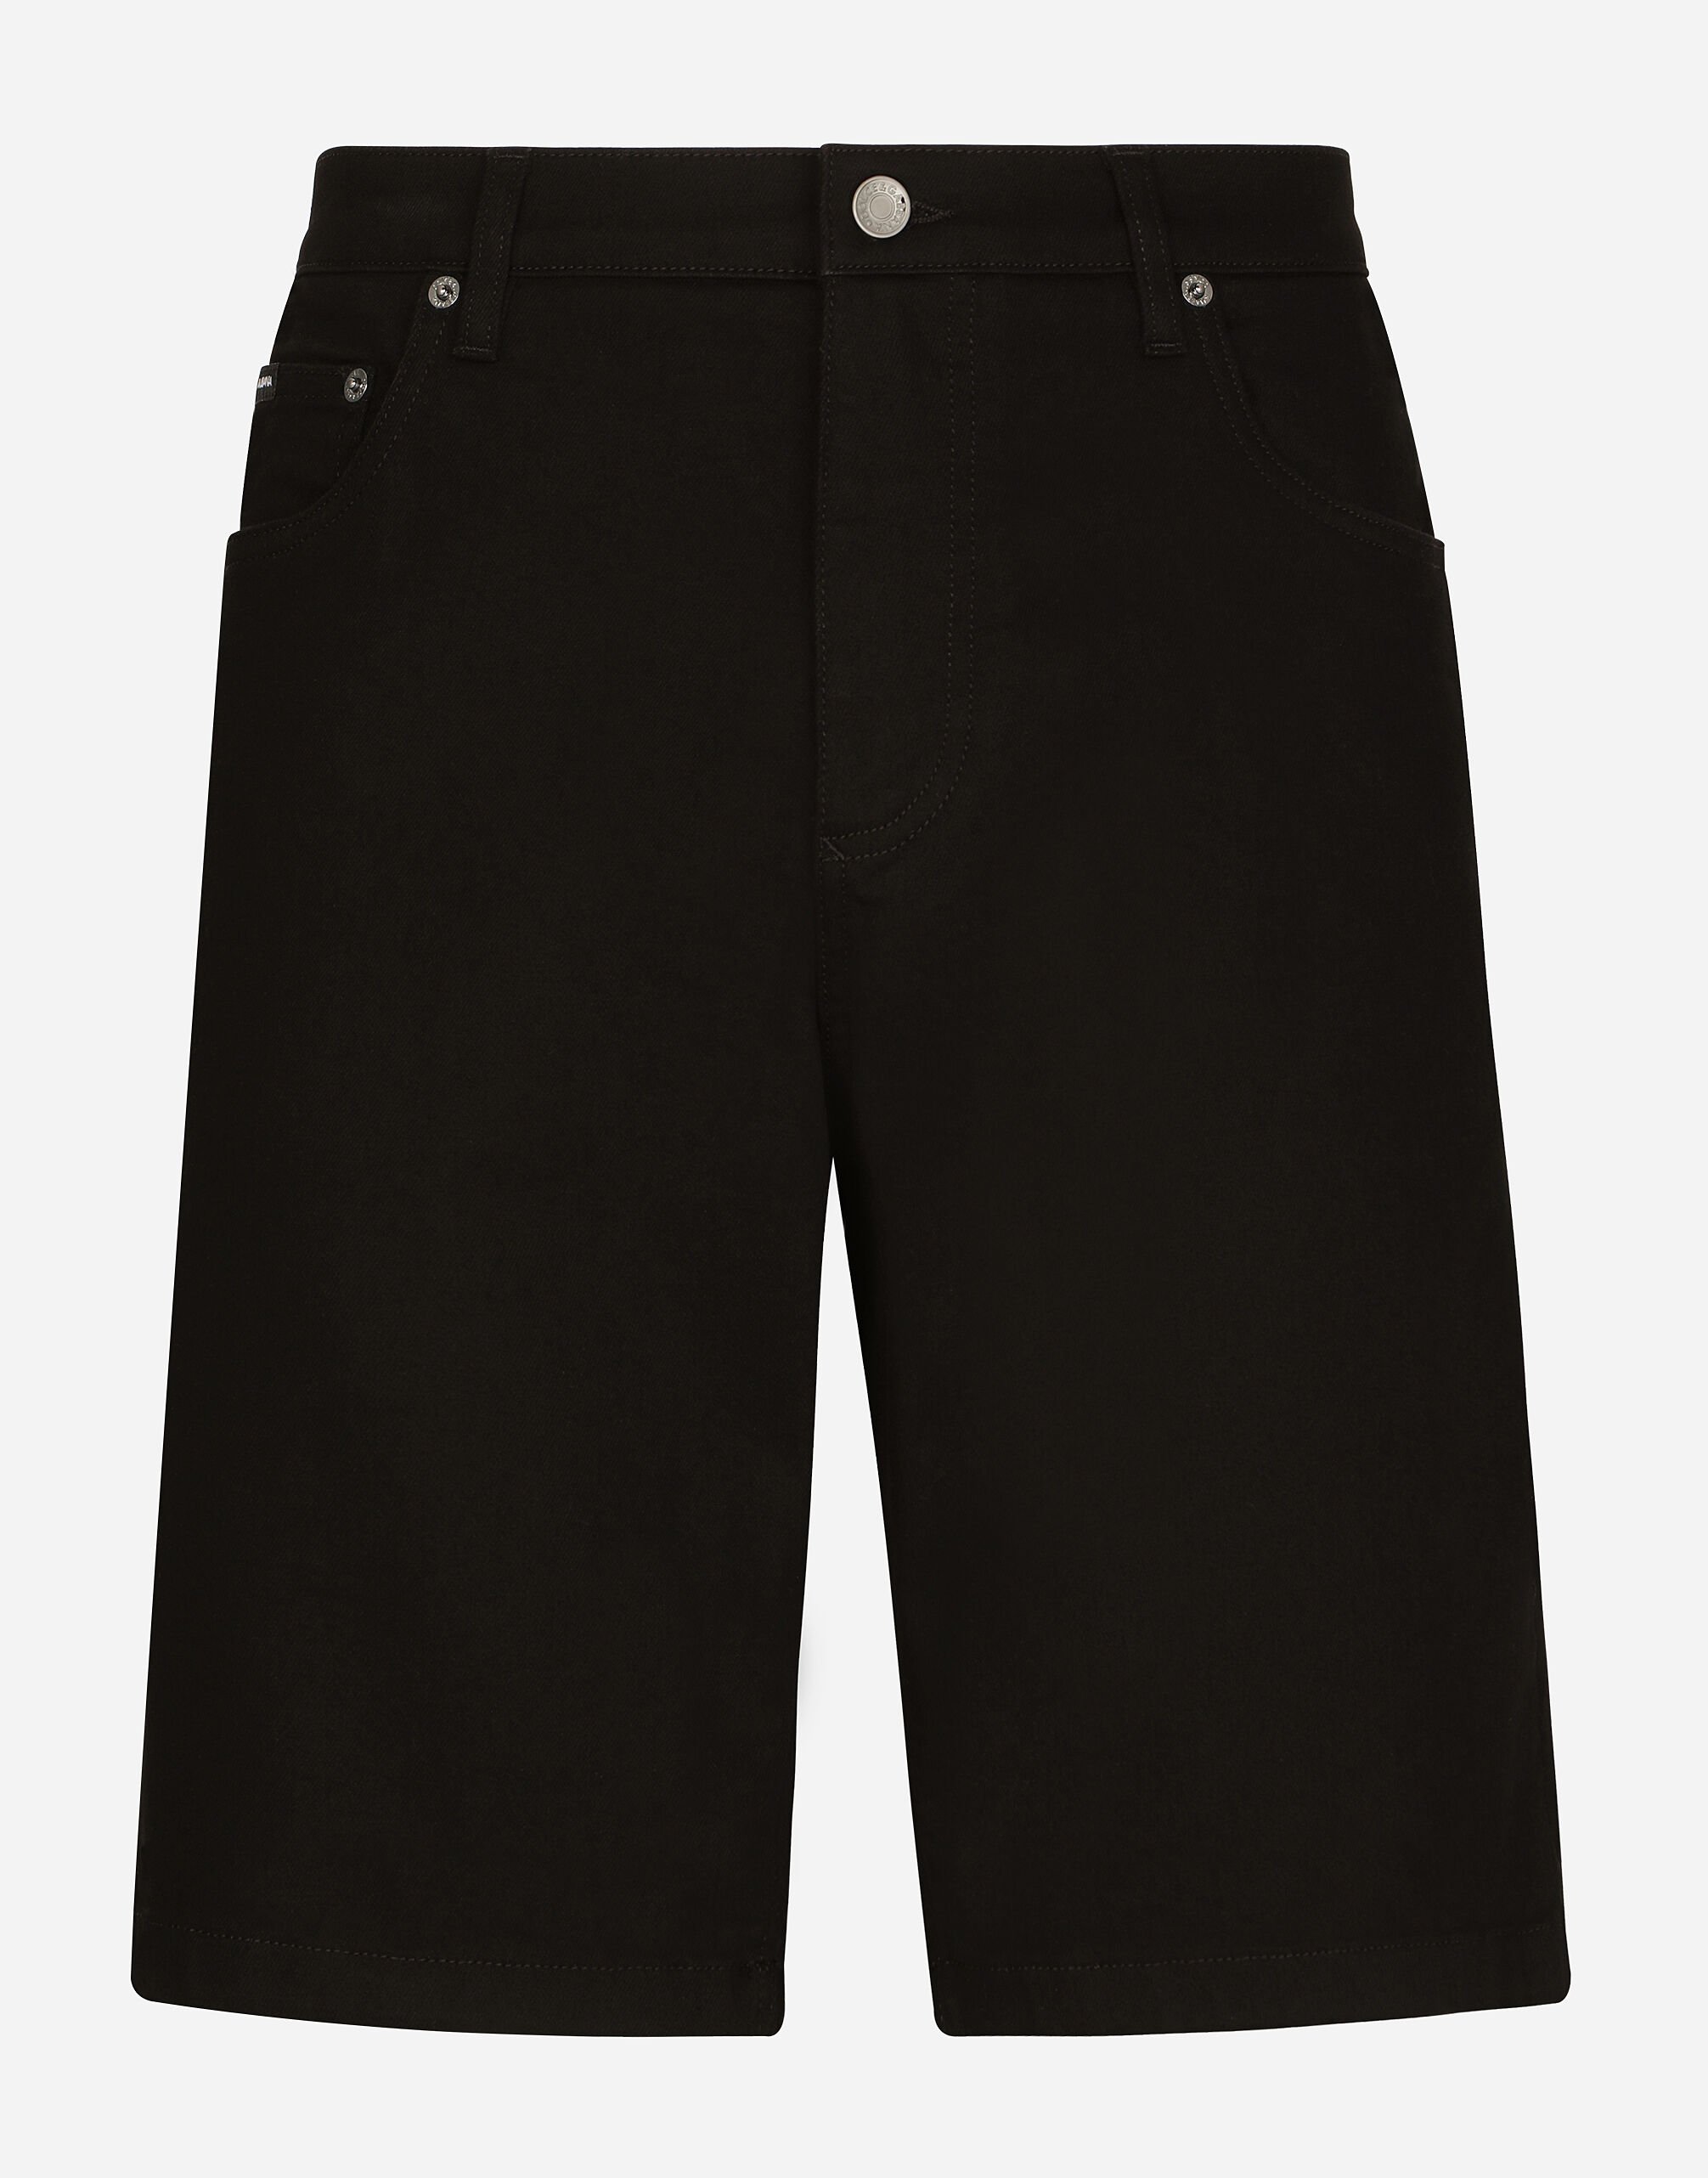 Dolce & Gabbana Jeans-Bermudas Stretch schwarz gewaschen Schwarz G5JG4TFU5U8